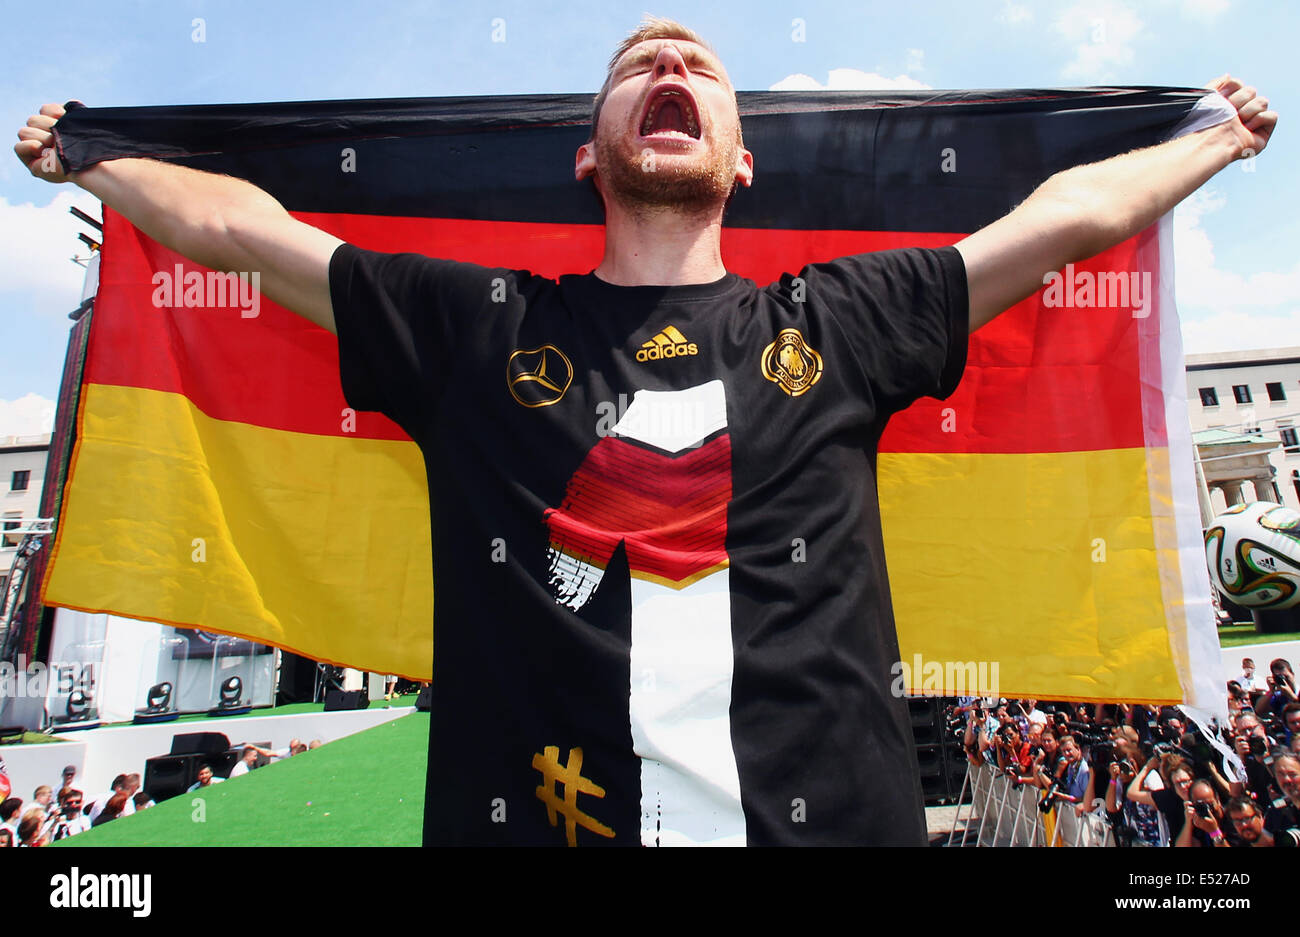 Fiesta de bienvenida de la Alemana Nationalteam, el nuevo Campeón del Mundo de fútbol, en la Puerta de Brandenburgo en Berlín, Per Mertesacker. Foto de stock